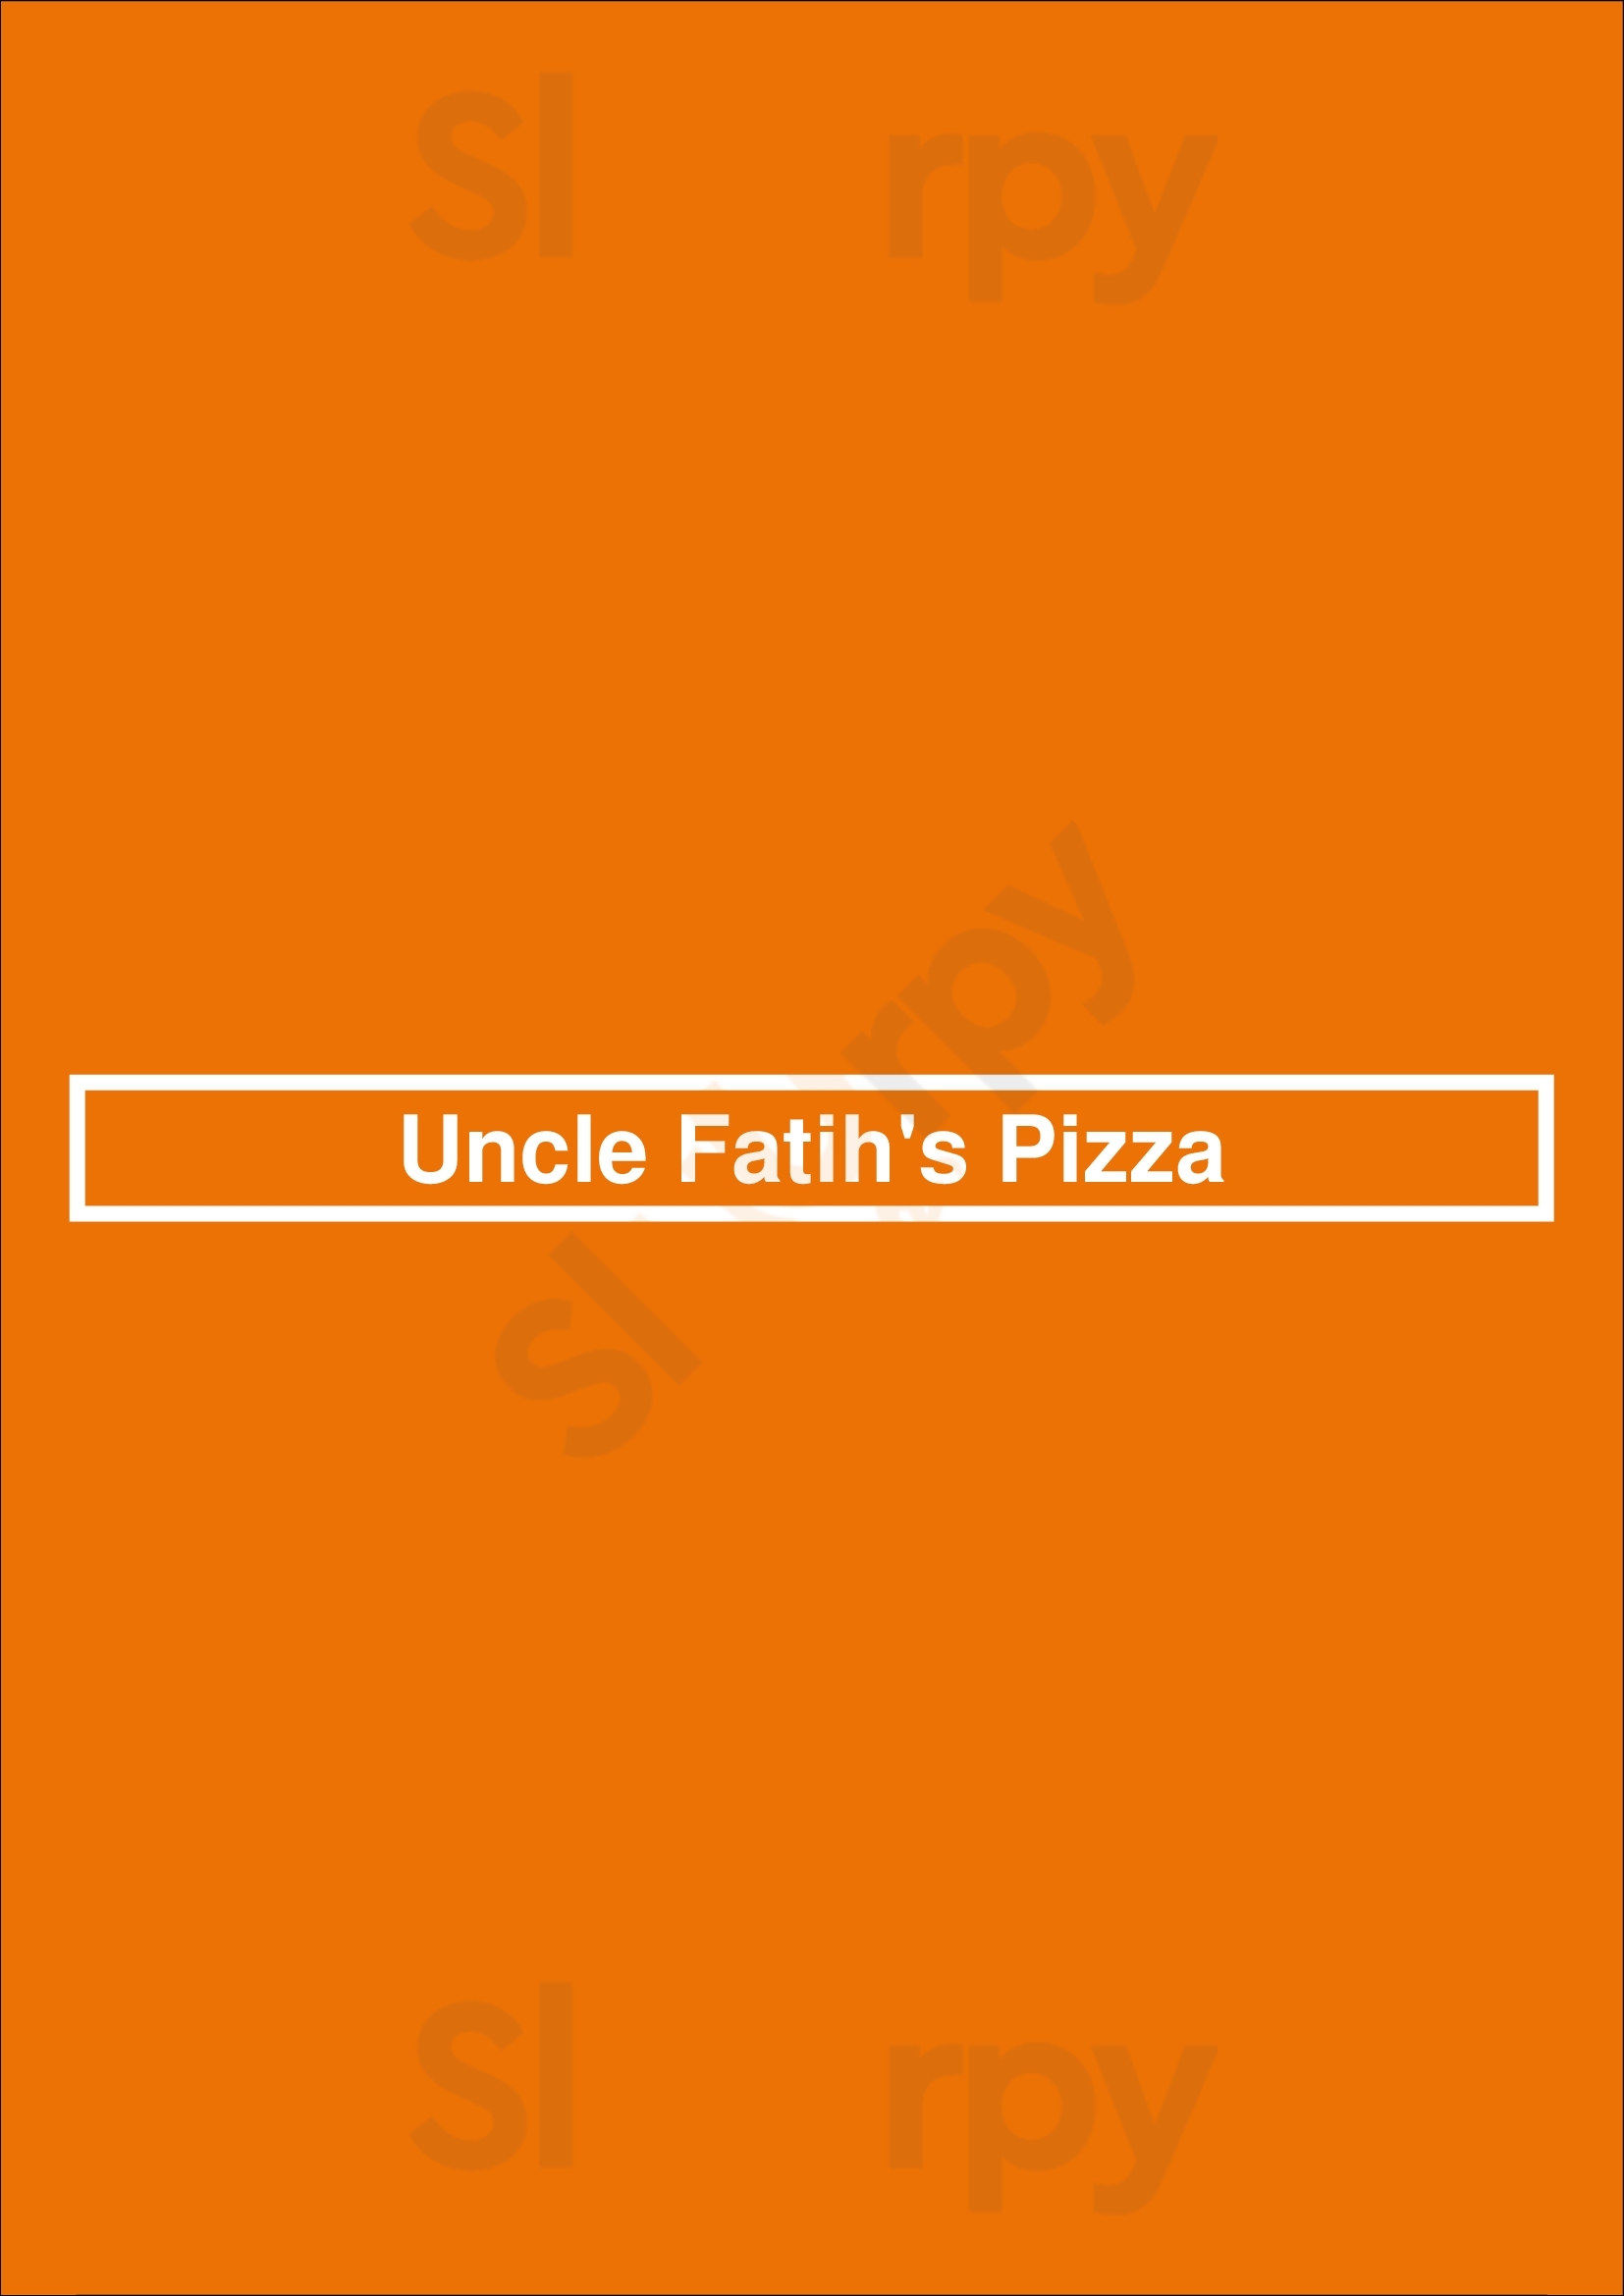 Uncle Fatih's Pizza Vancouver Menu - 1